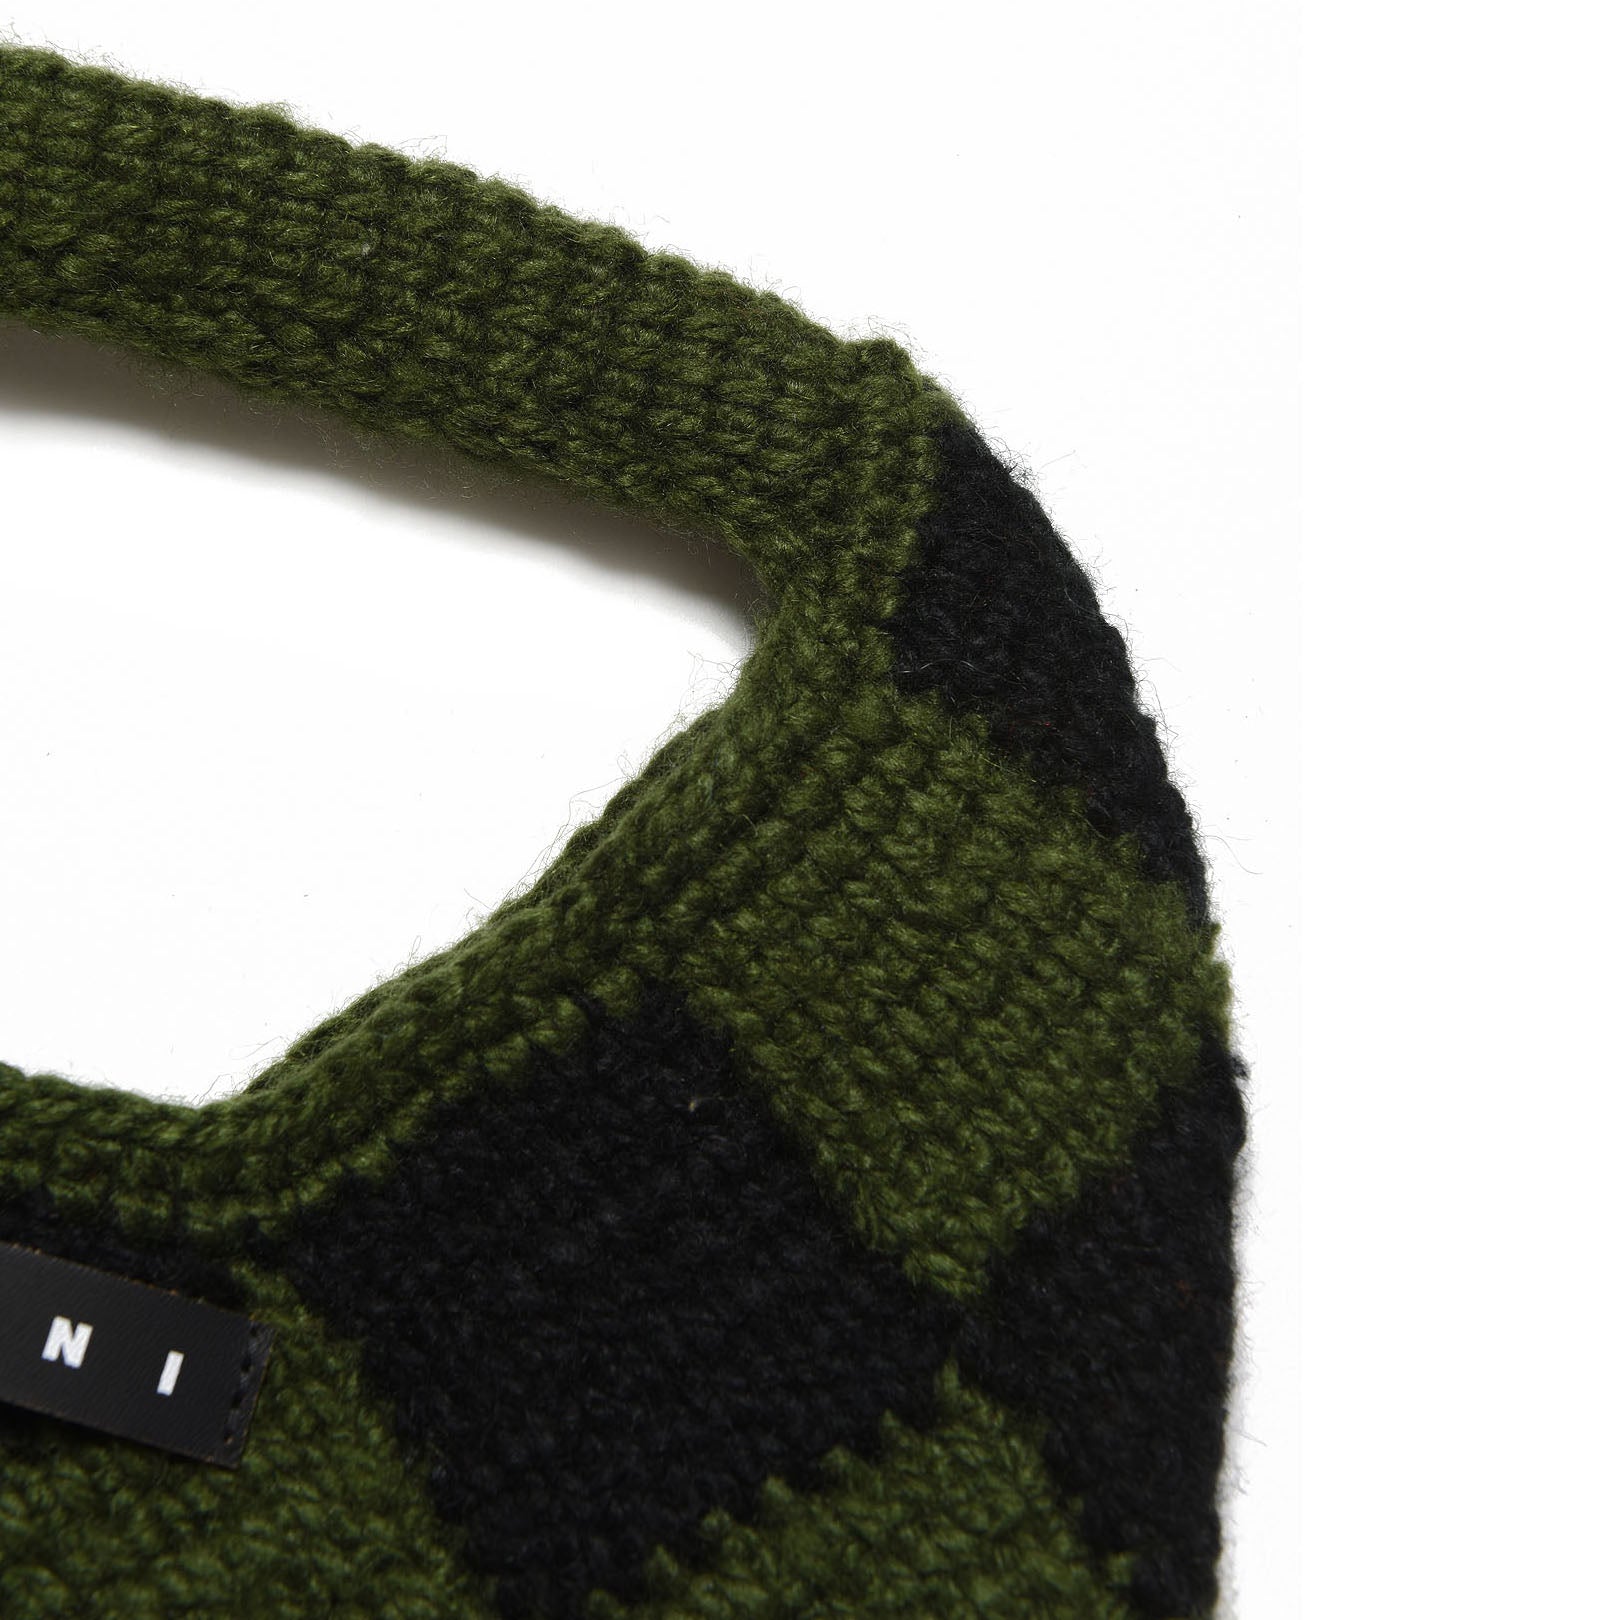 Girls Green Check Crochet Handbag